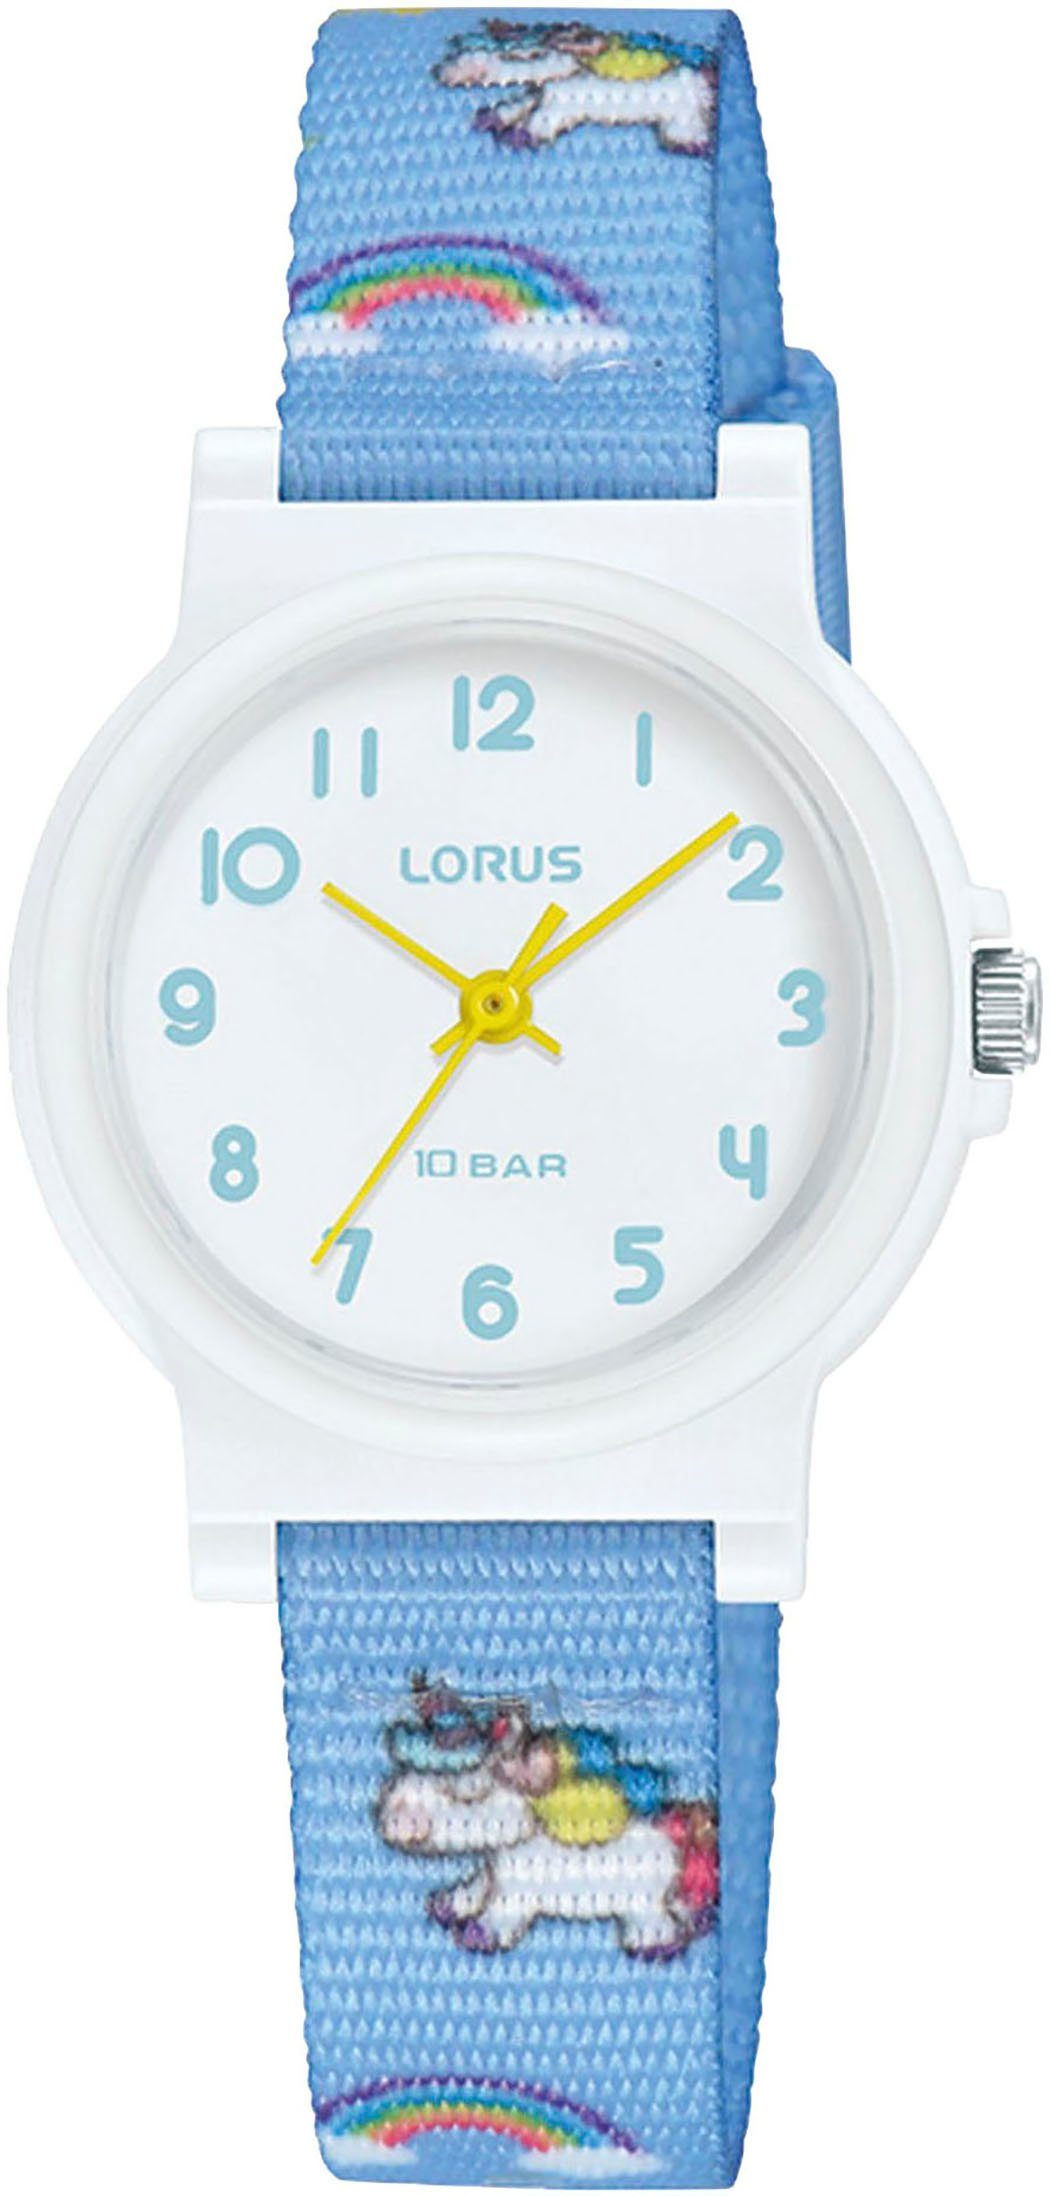 LORUS Quarzuhr, Armbanduhr, Kinderuhr, ideal auch als Geschenk